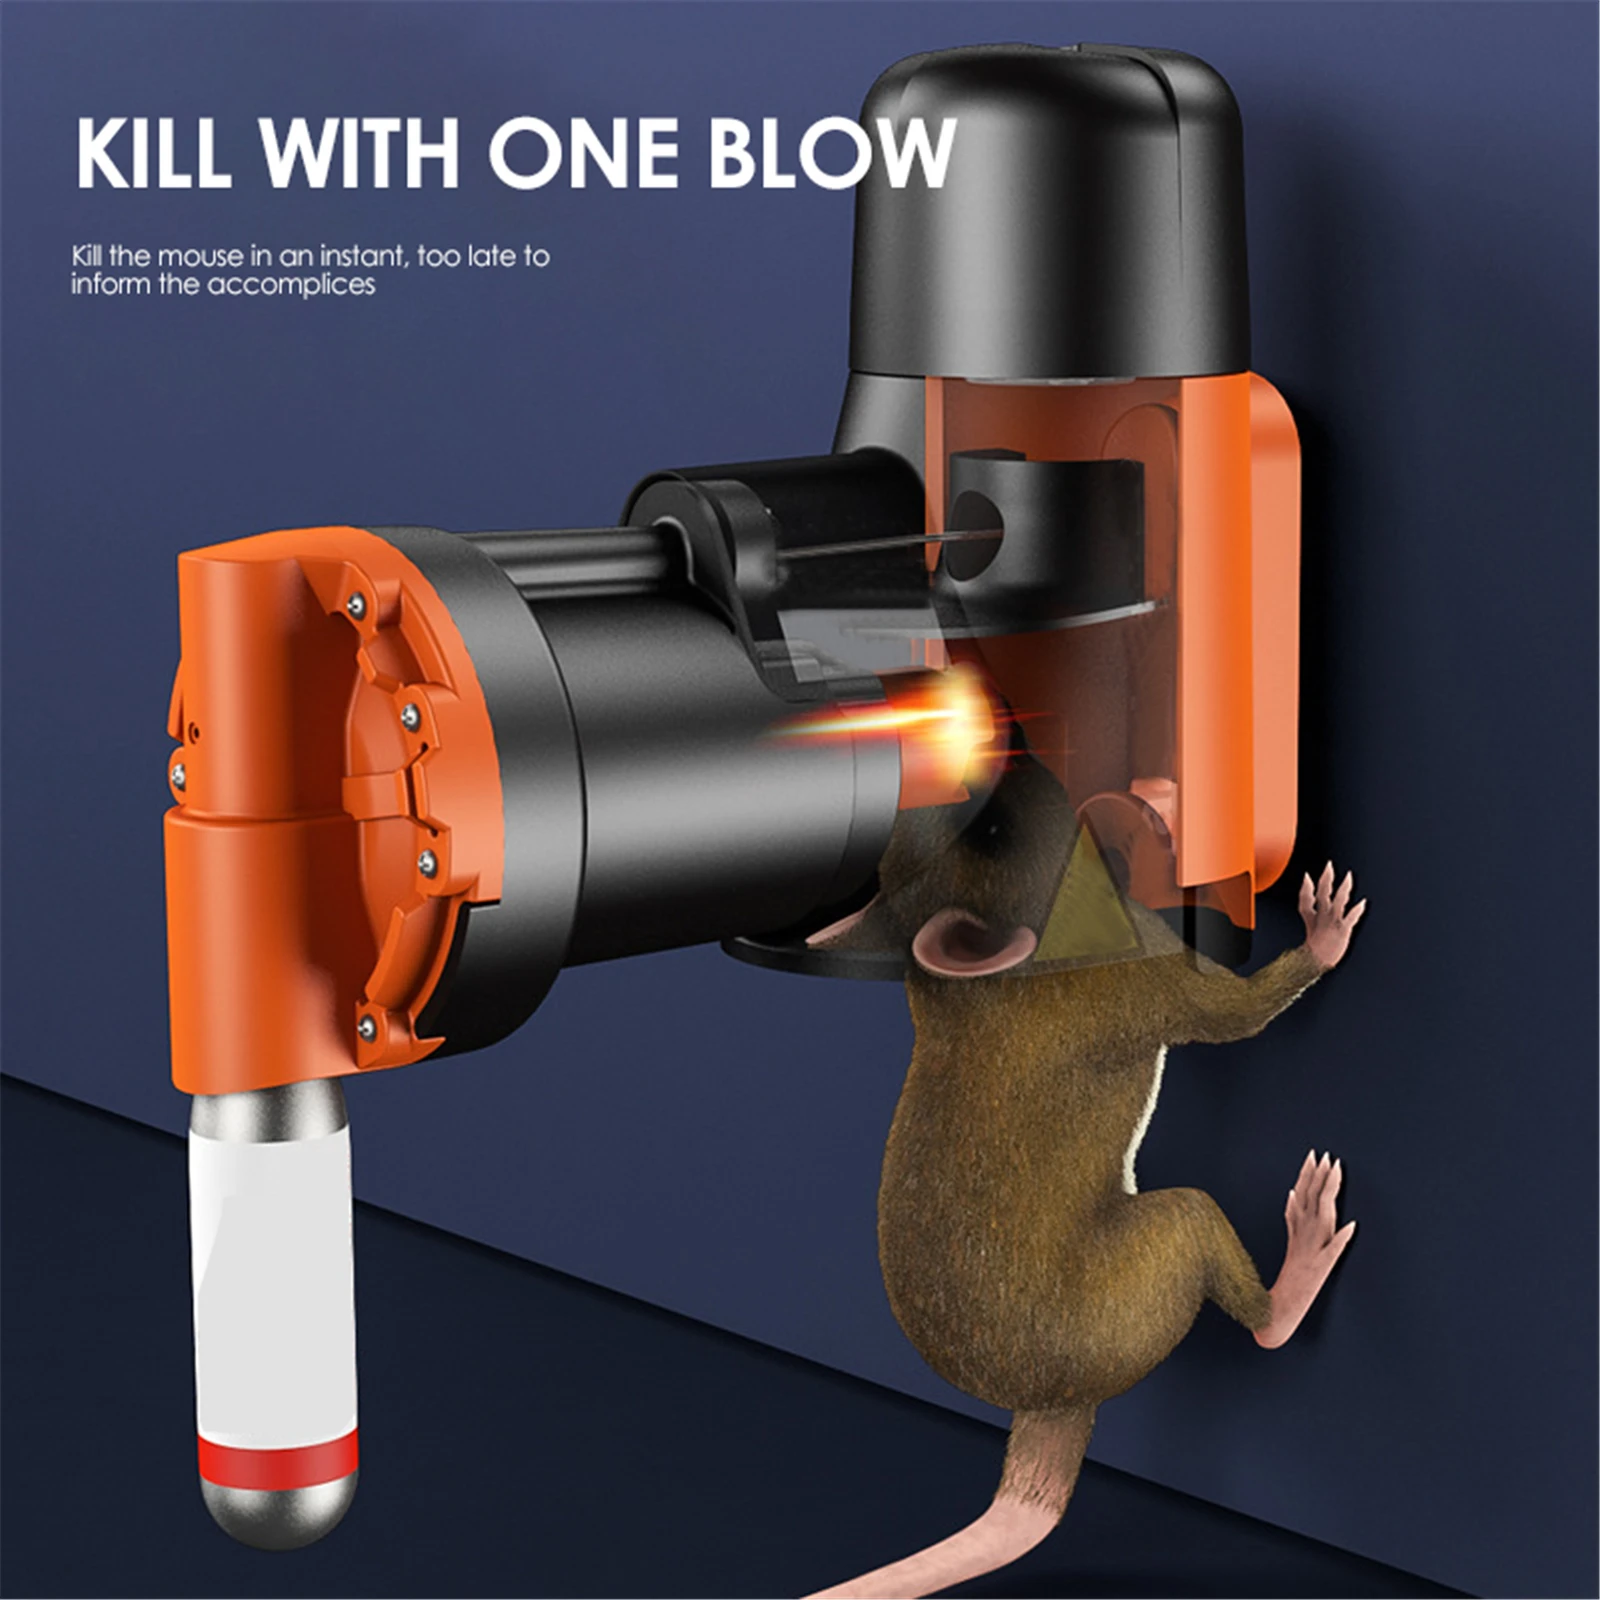 

Автоматическая ловушка для крыс и мышей, автоматическая ловушка для мышей и крыс с CO2 цилиндрами, Нетоксичная, умная